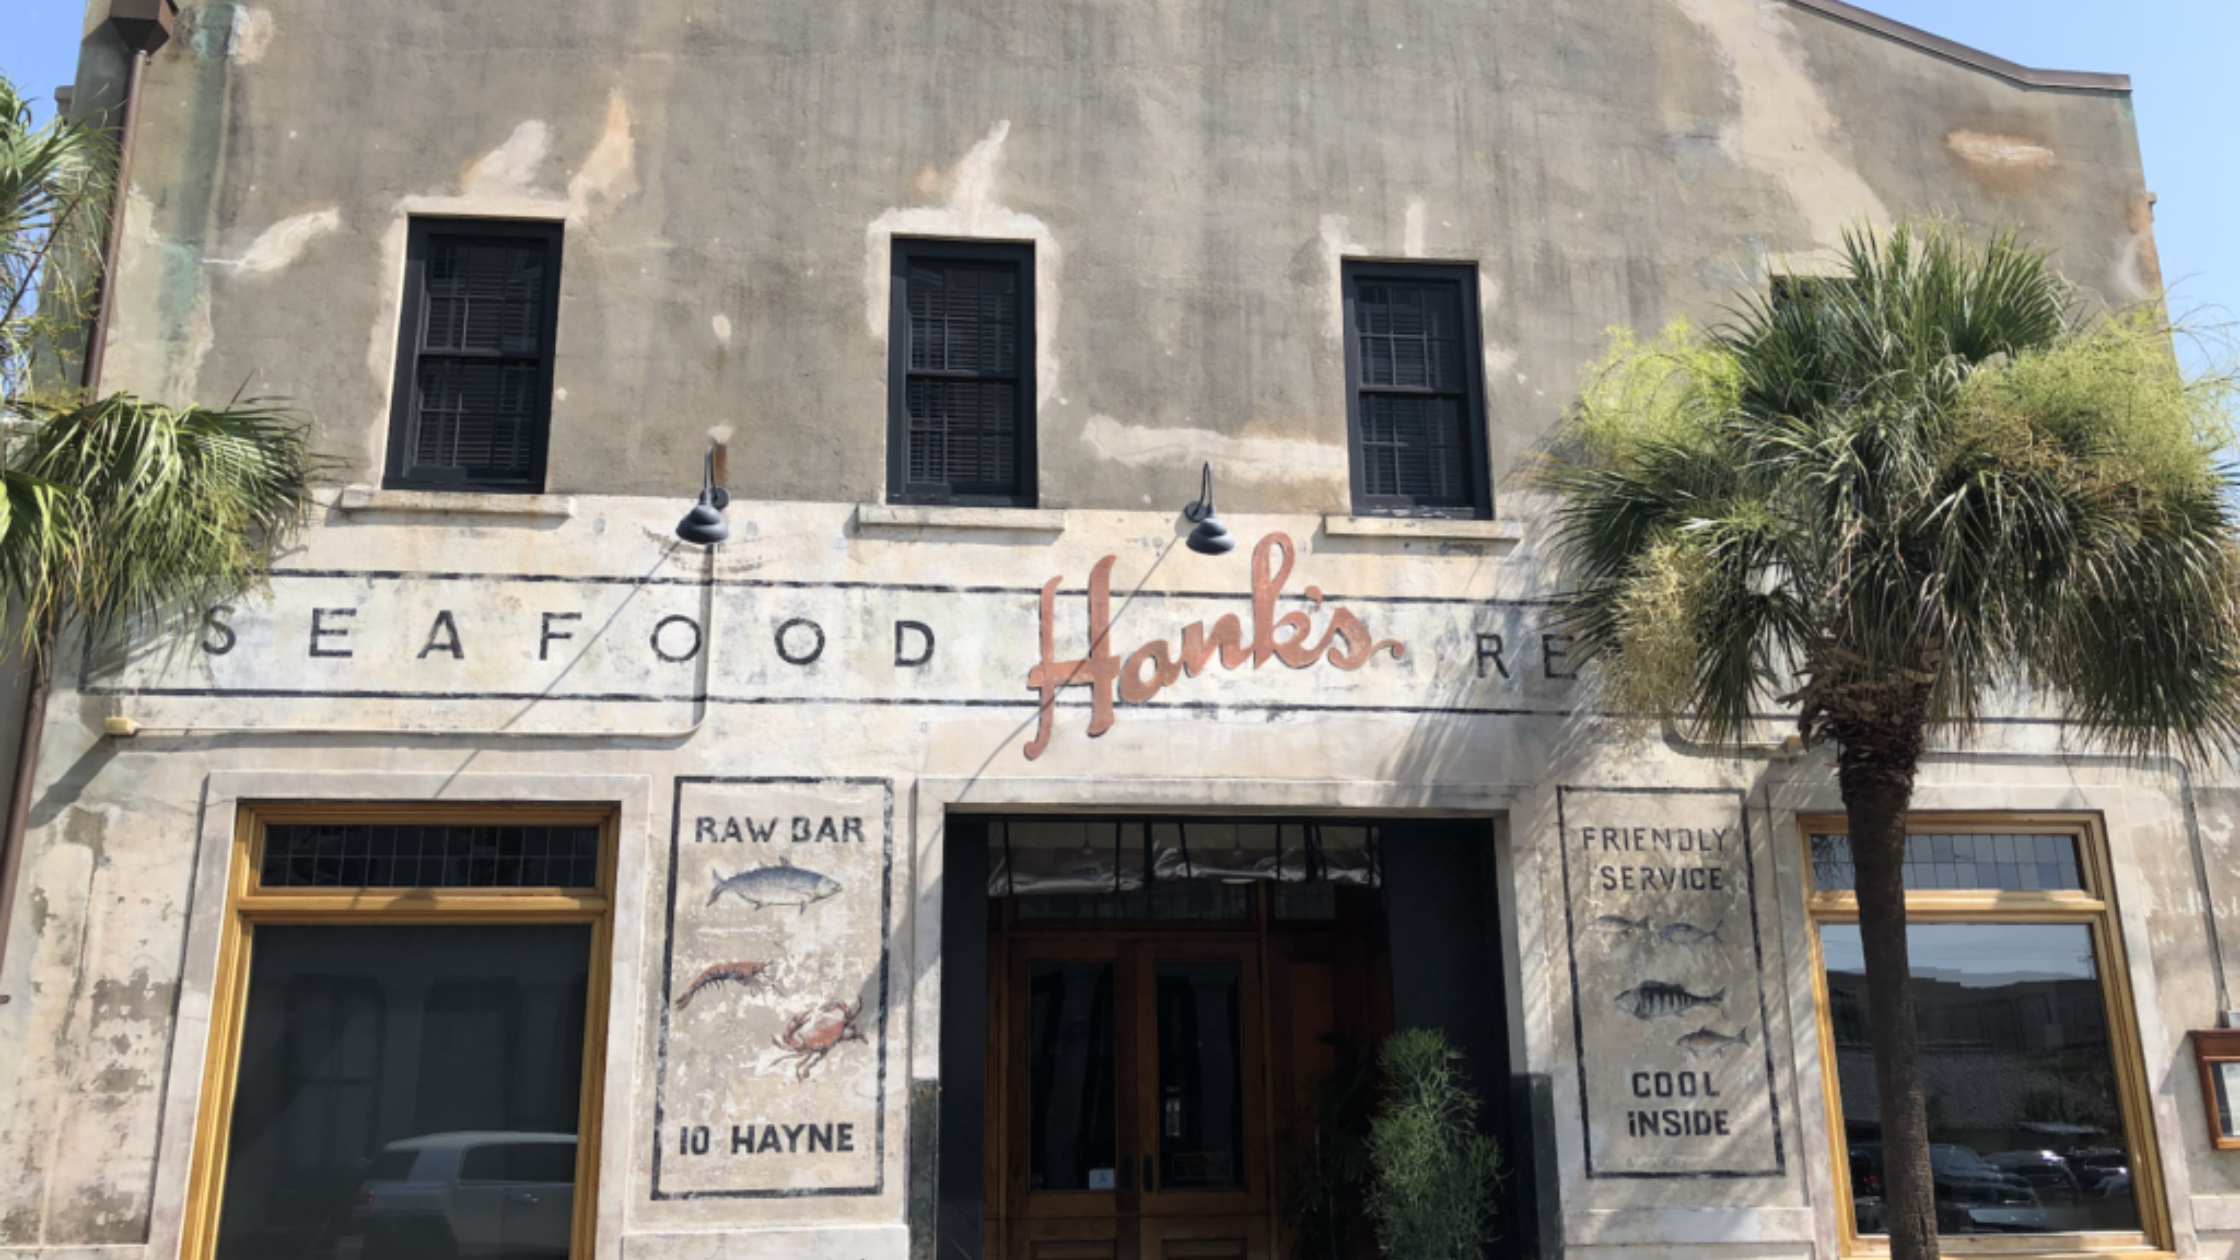 Hanks Seafood - best food in charleston, sc